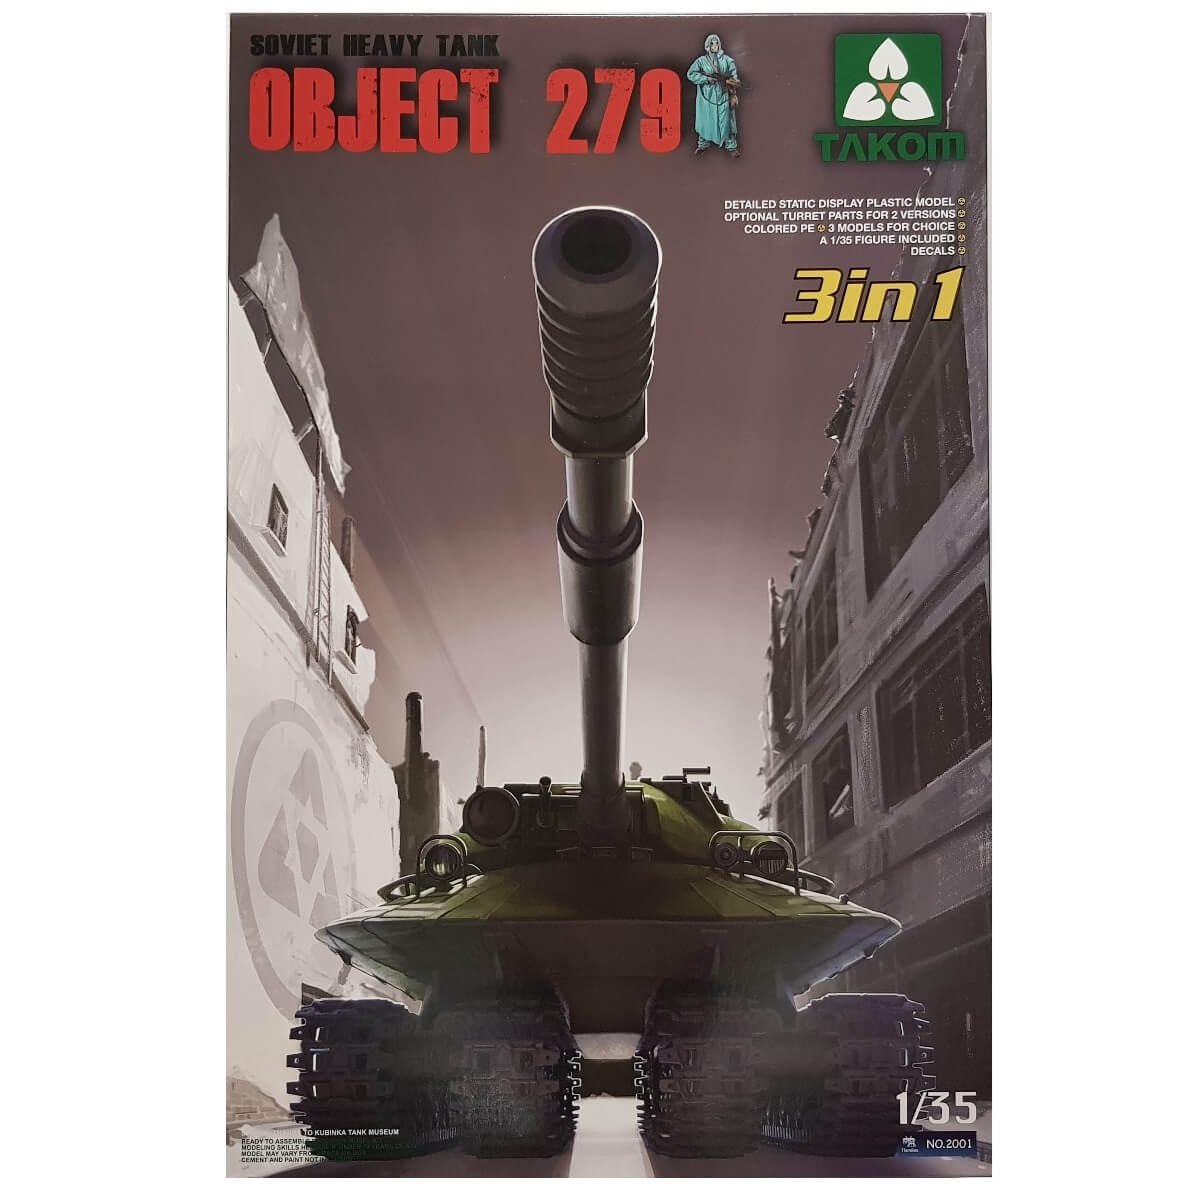 1:35 Soviet Heavy Tank OBJECT 279 - TAKOM